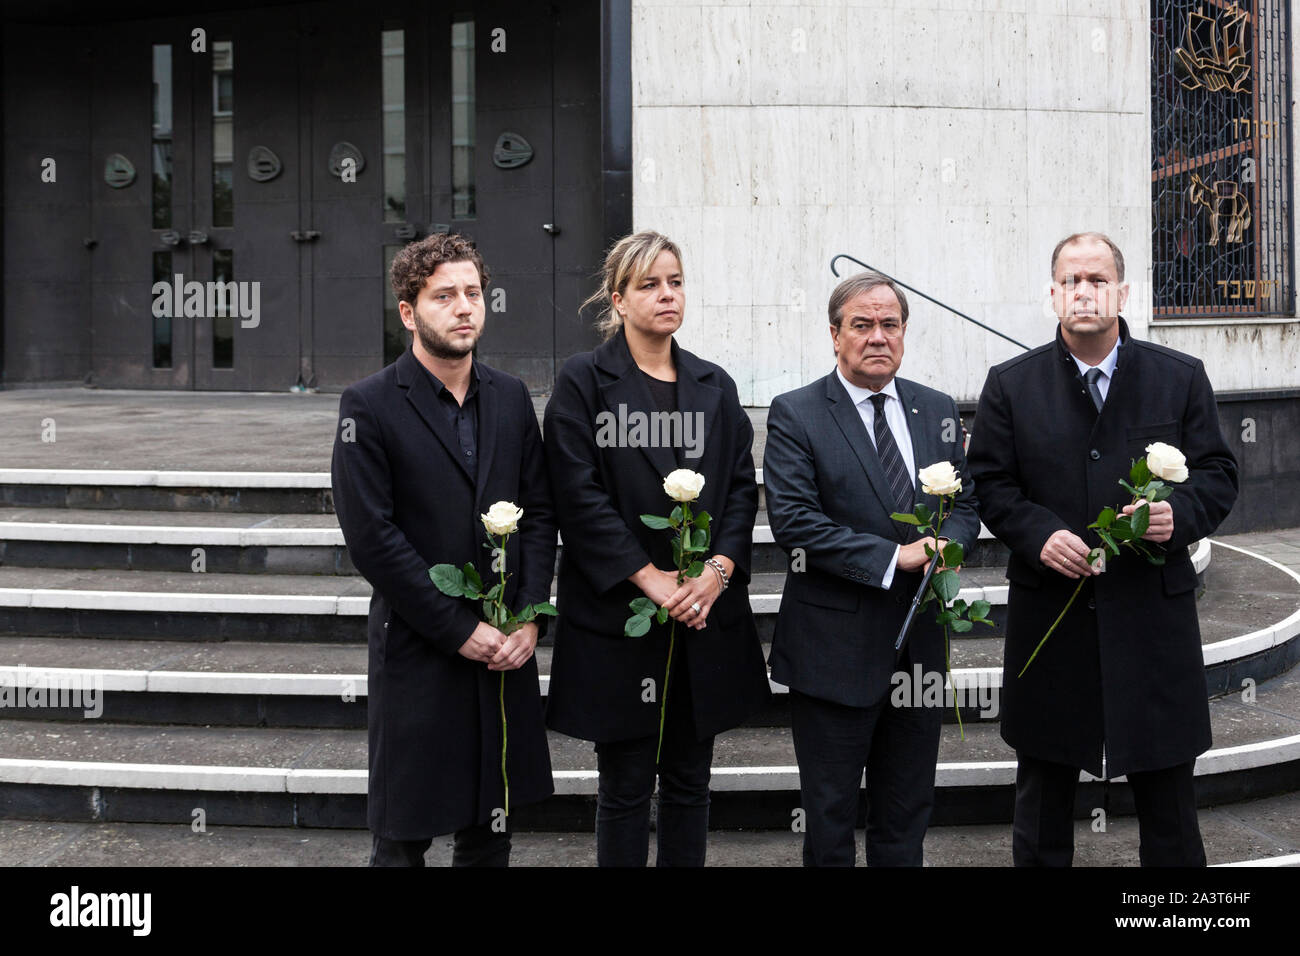 Minutos de silencio, NRW políticos superiores en frente de la nueva sinagoga Foto de stock